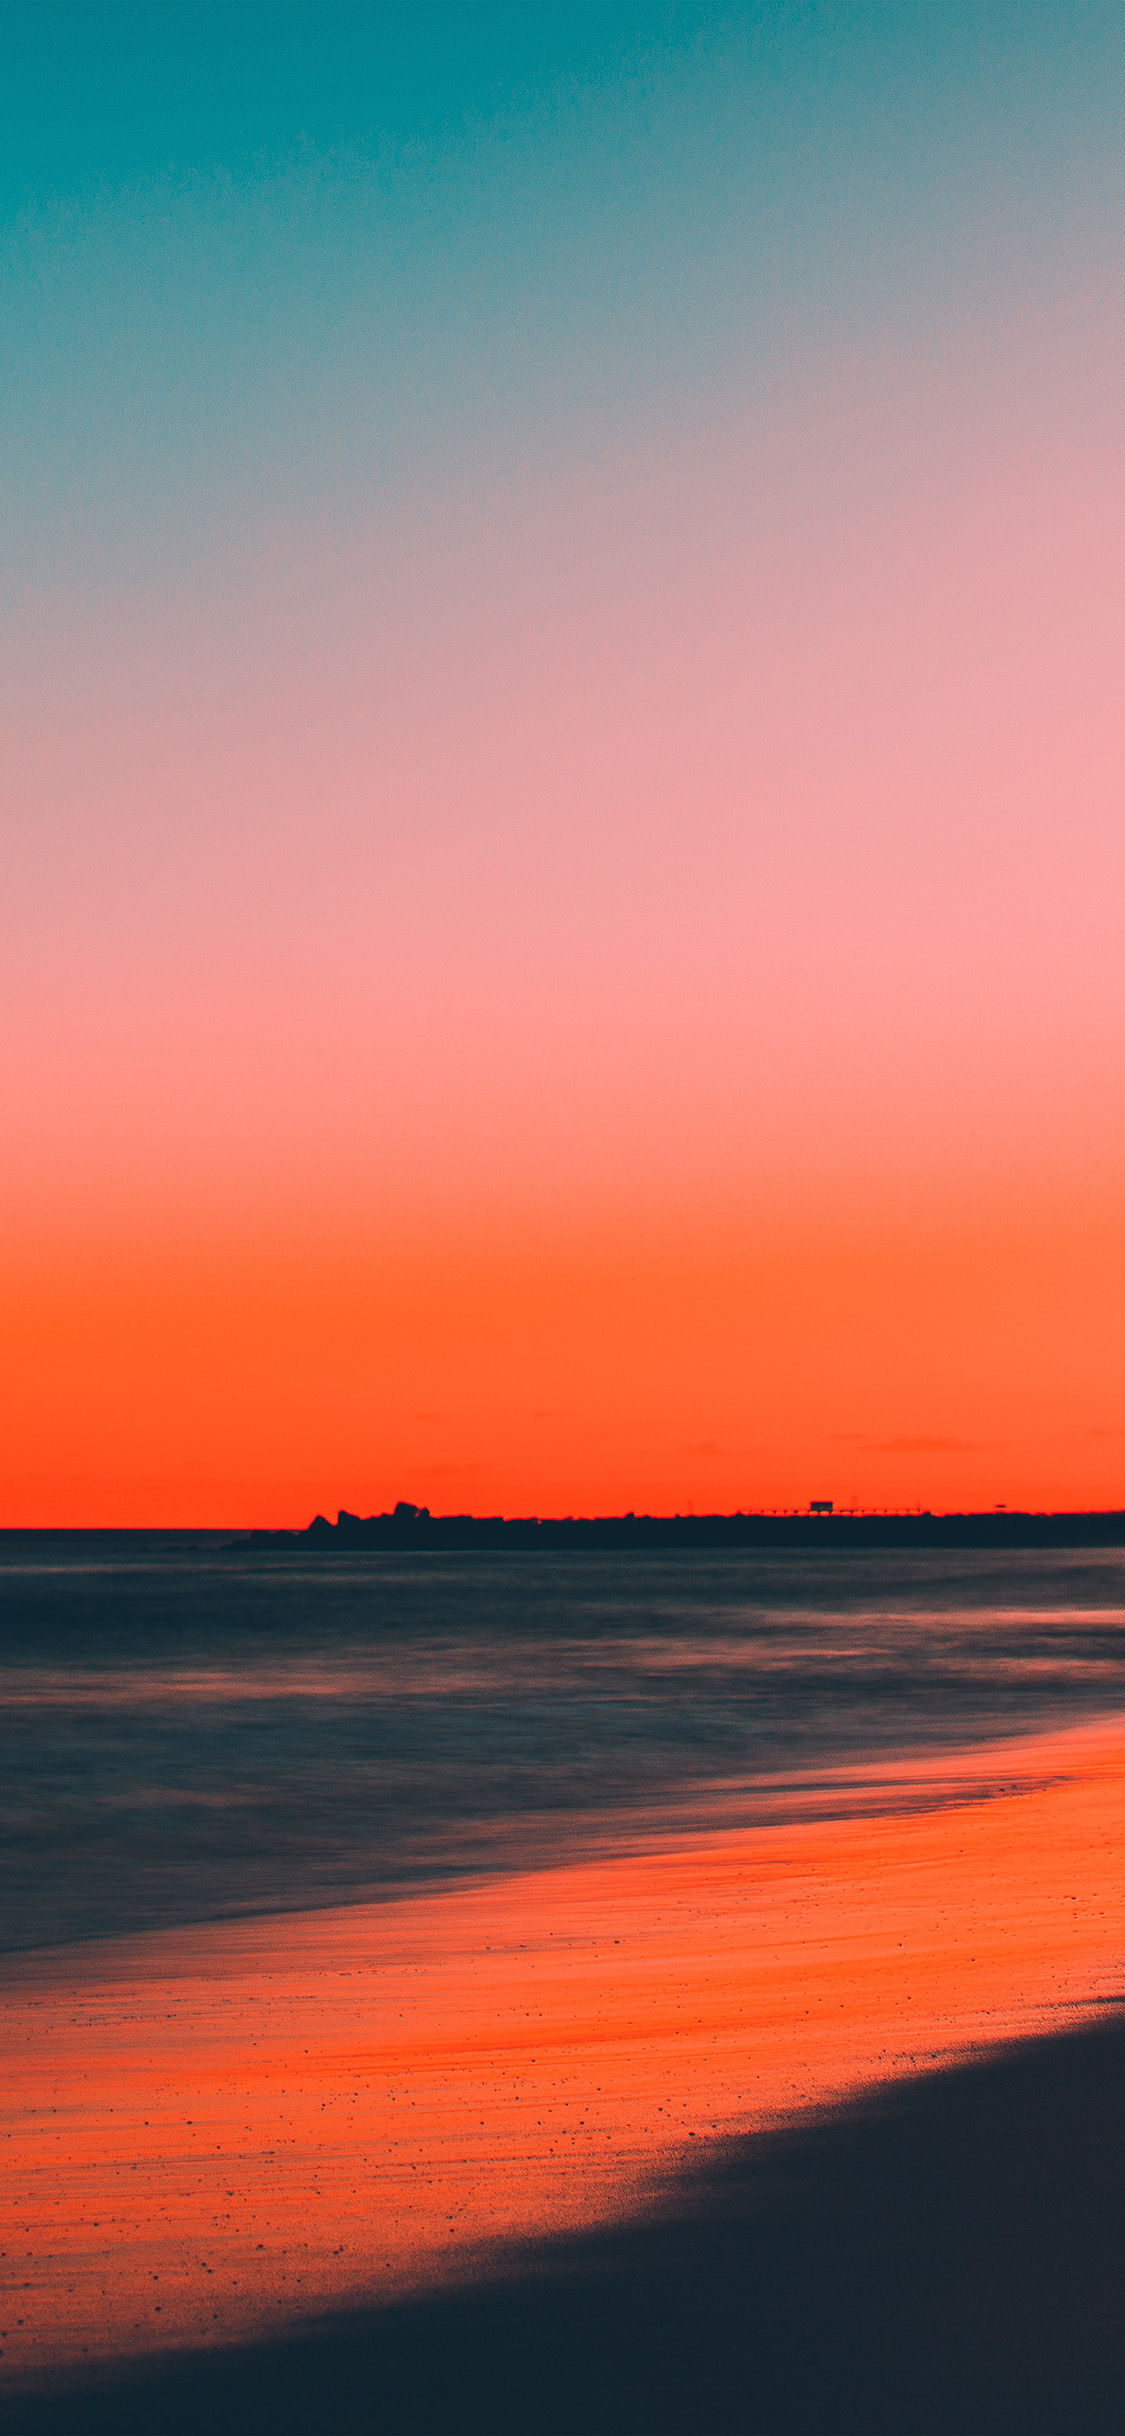 Beach Sunset Wallpaper Iphone X - HD Wallpaper 